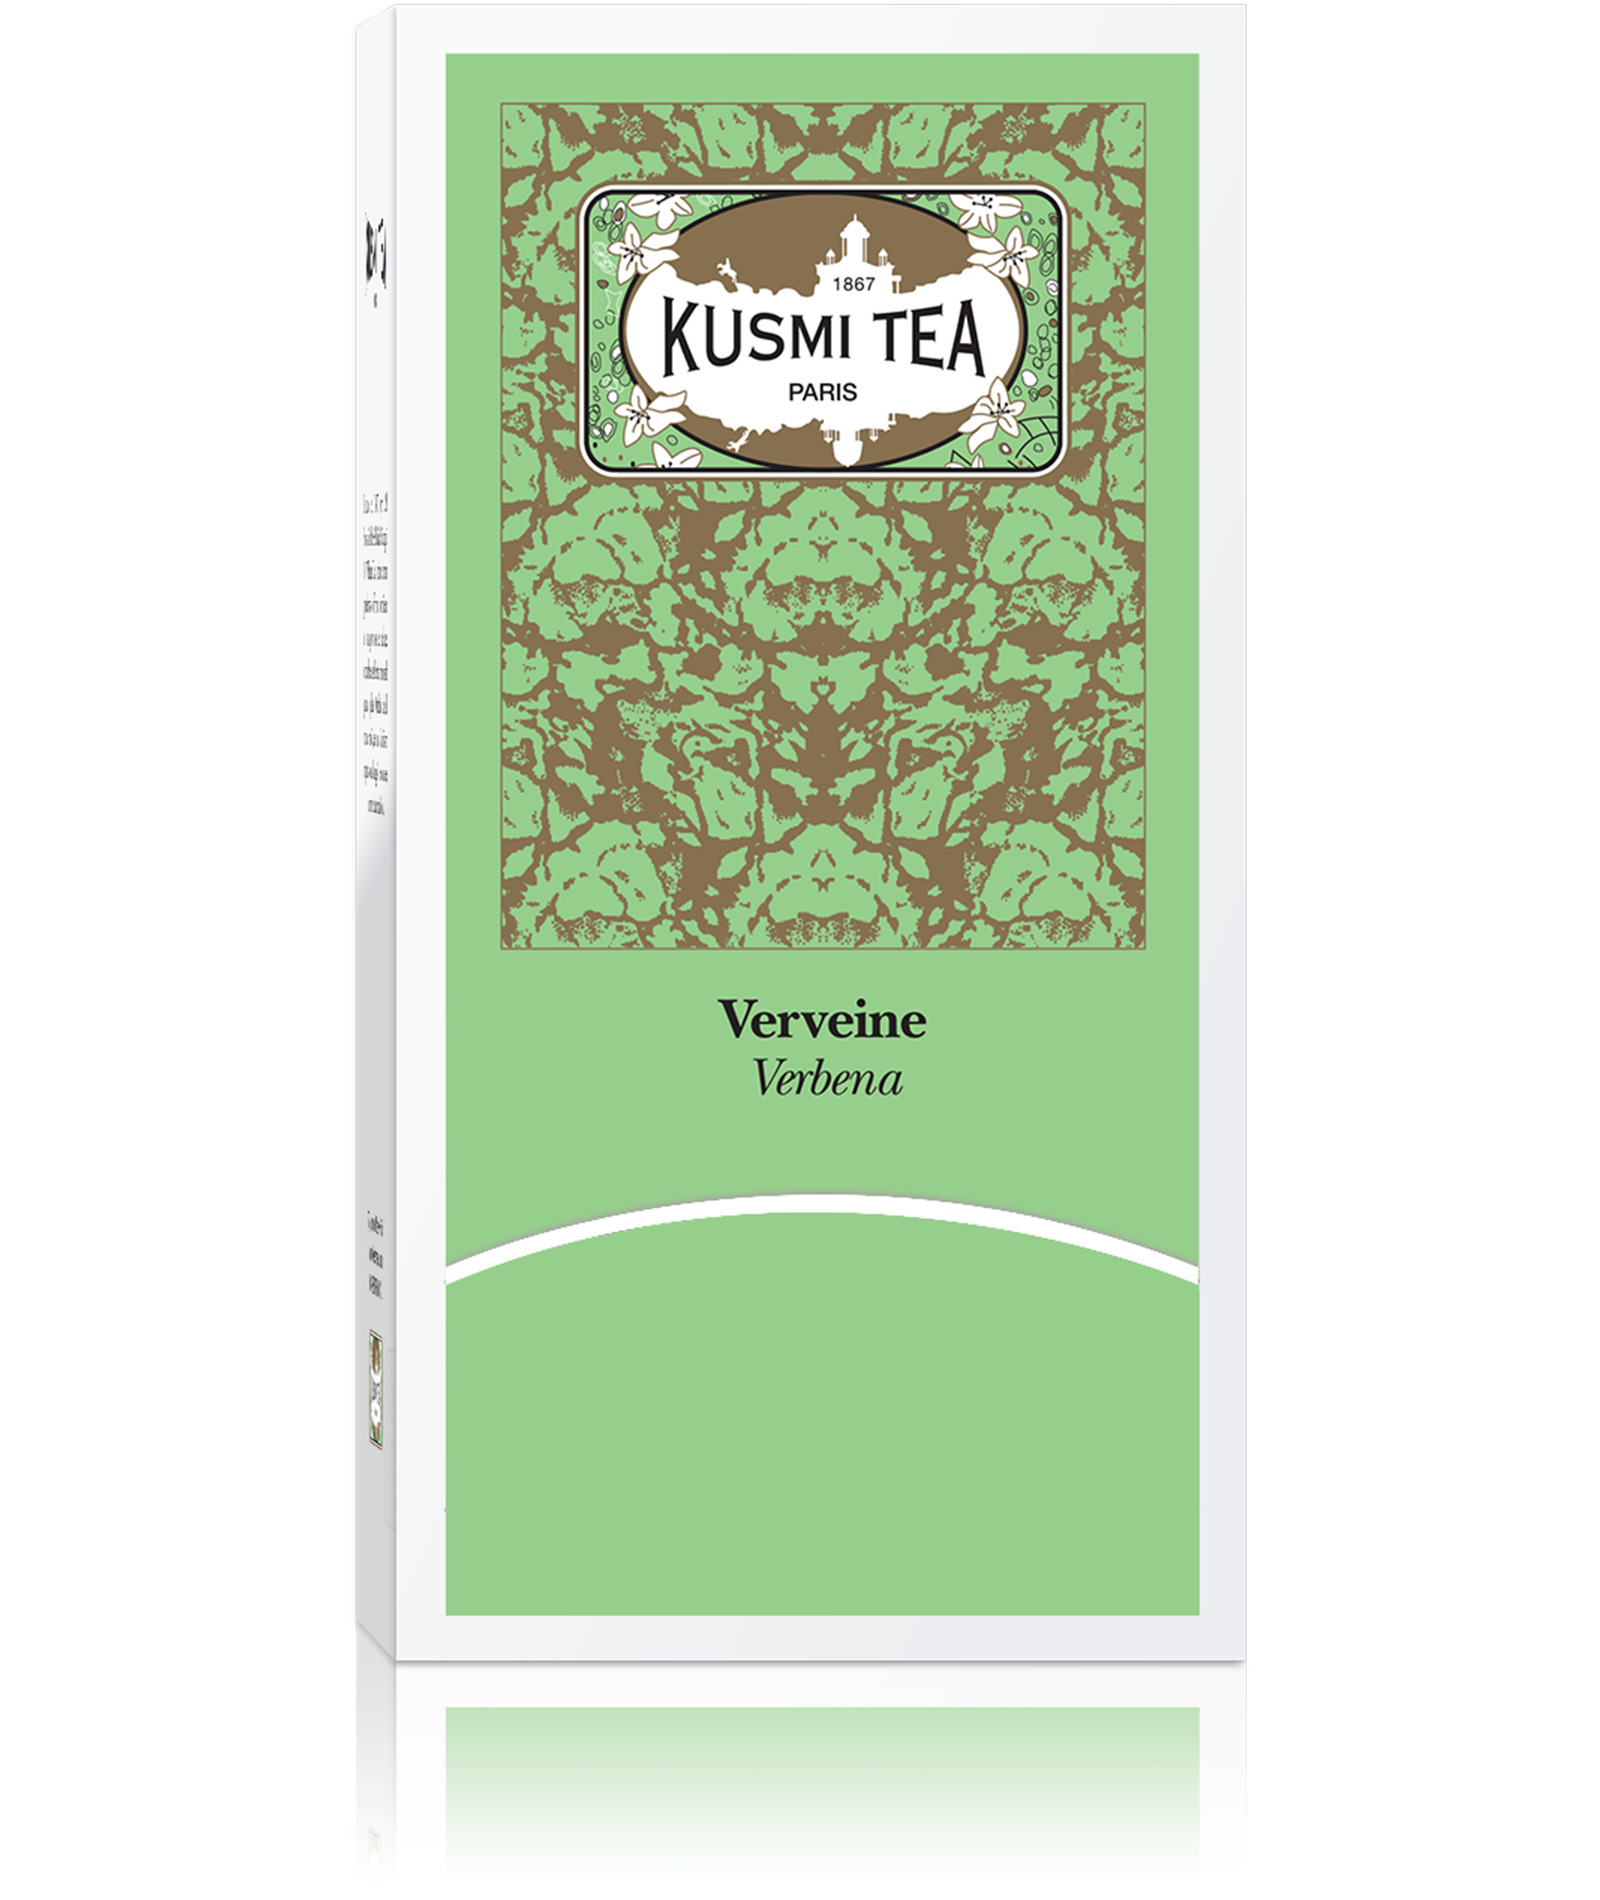 KUSMI TEA Verveine Kusmi Tea